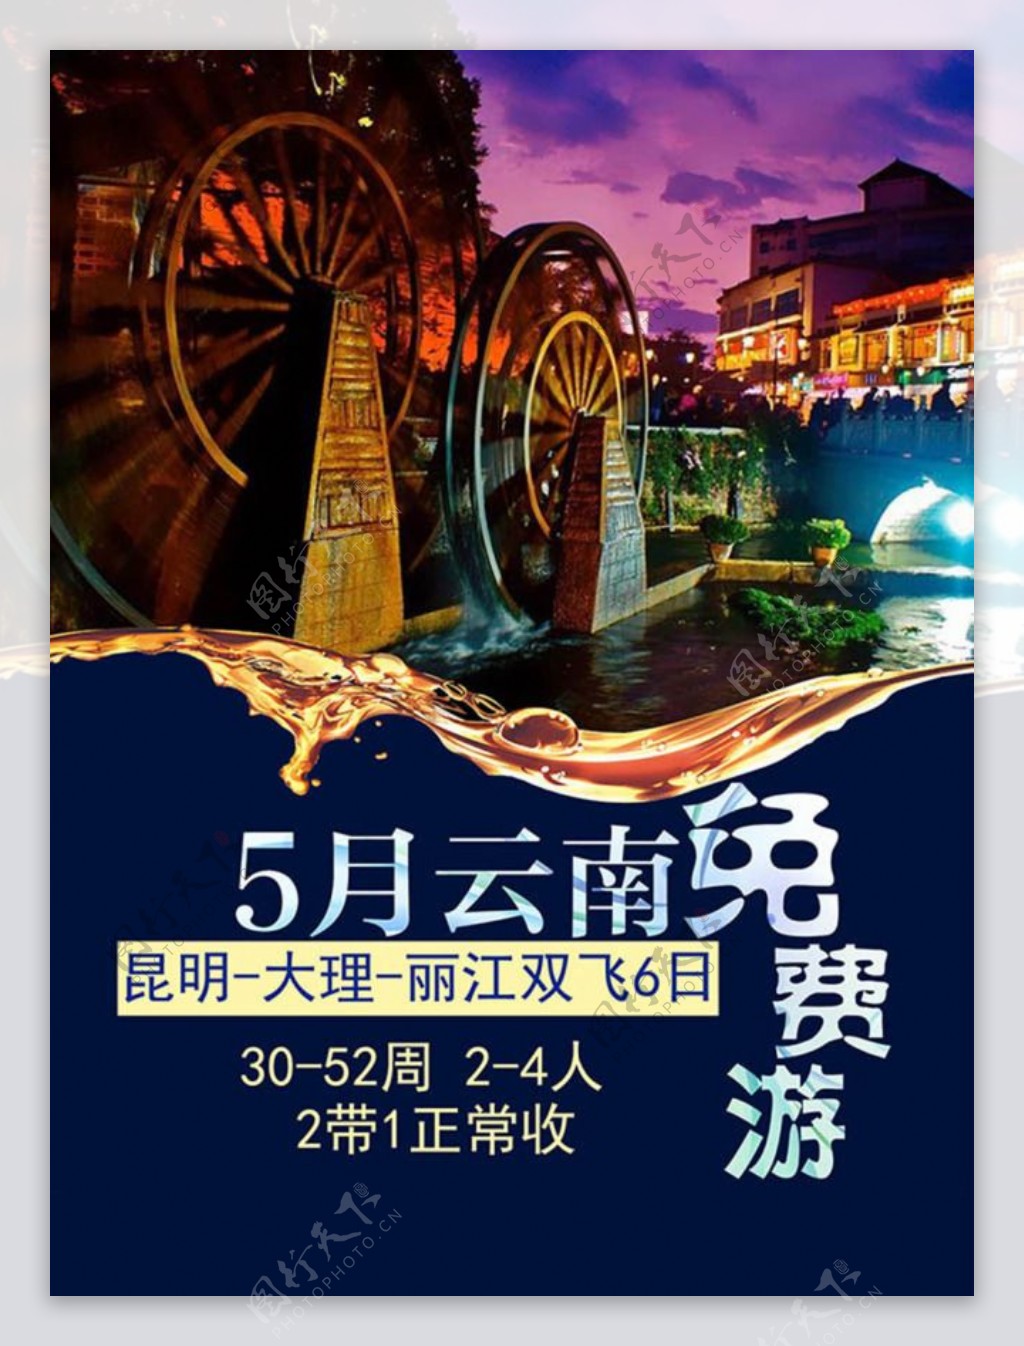 五月云南免费游宣传海报